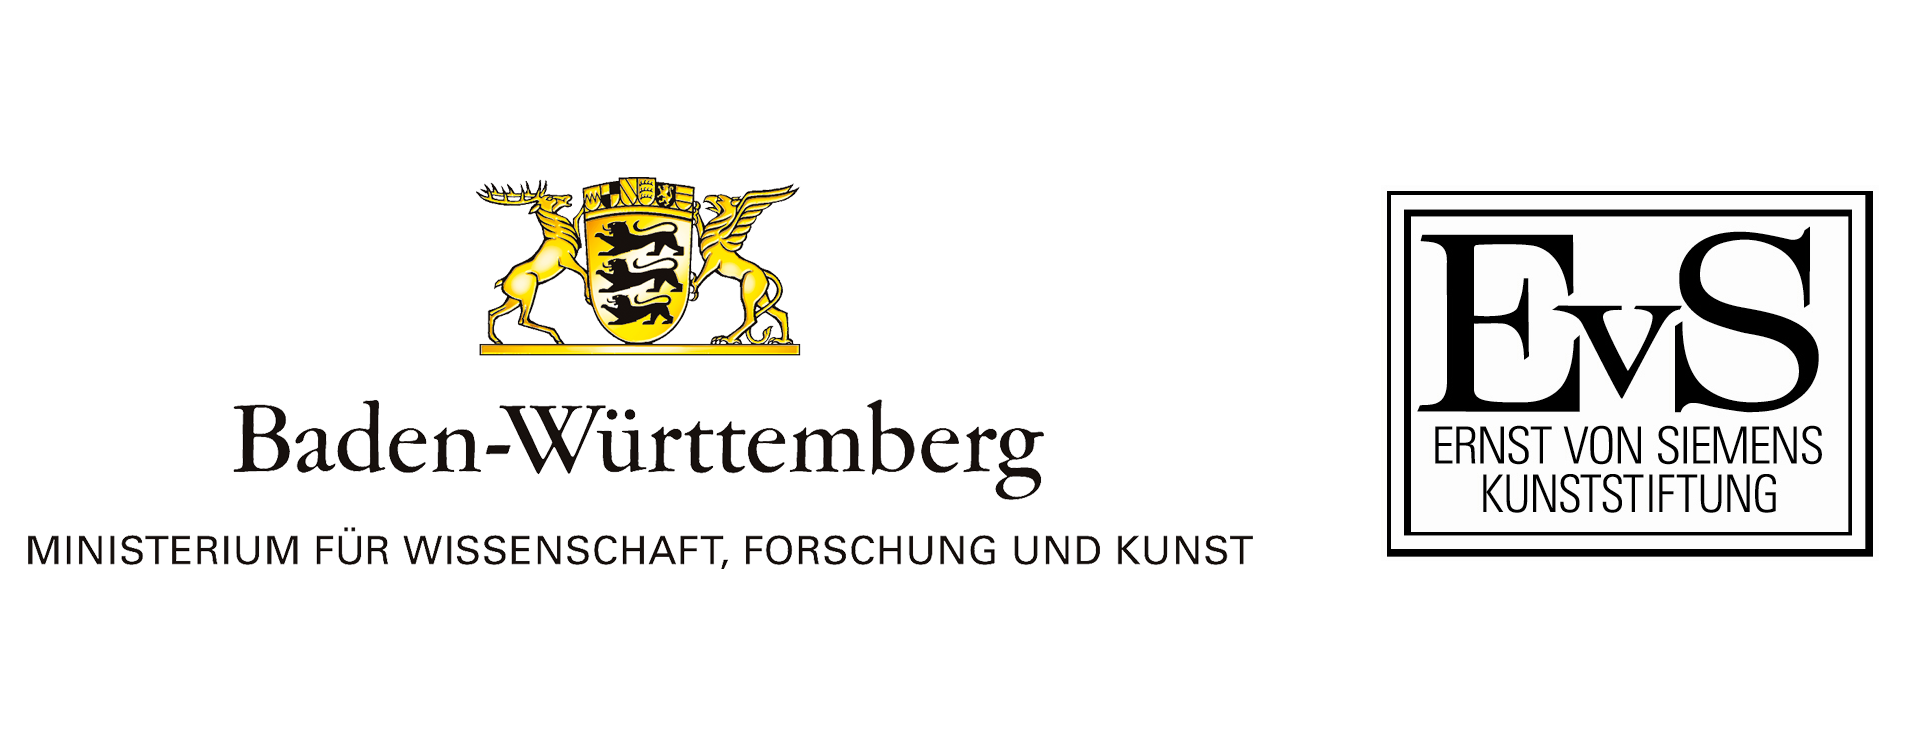 Logos des Ministeriums für Wissenschaft, Forschung und Kunst, Baden-Württemberg sowie der Ernst von Siemens Kunststiftung